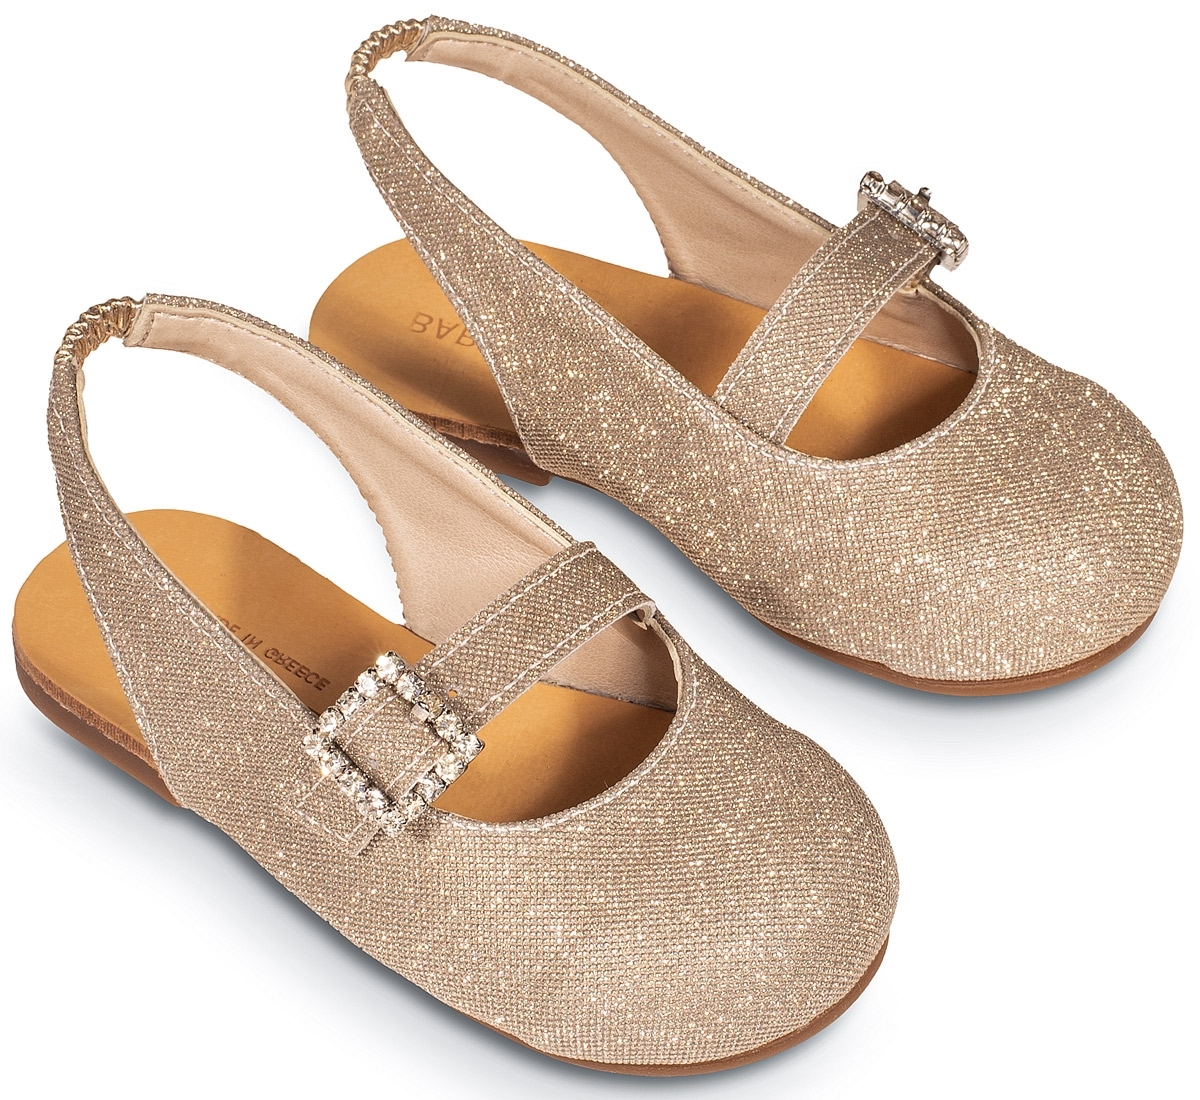 Γαλλικό γοβάκι χρυσό - Βαπτιστικά παπούτσια για κορίτσι